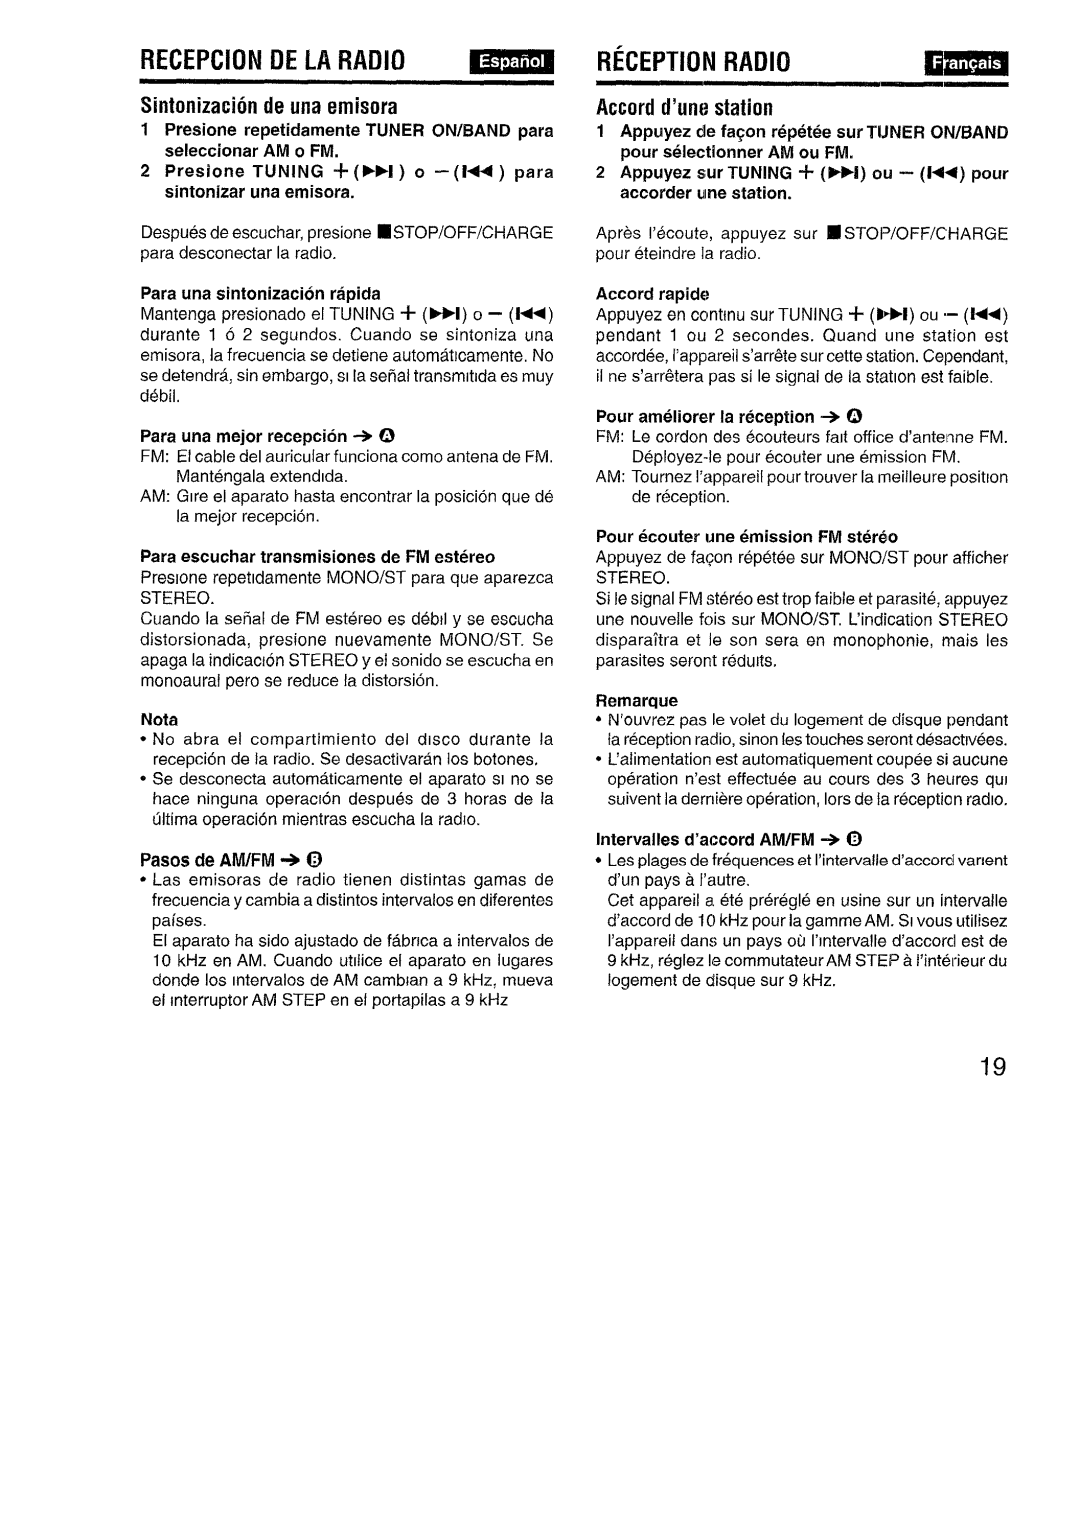 Aiwa XP-R970 manual Recepcion De La Radio, Reception Radio, Sintonizacion de una emisora, Accord d’une station, amsa 